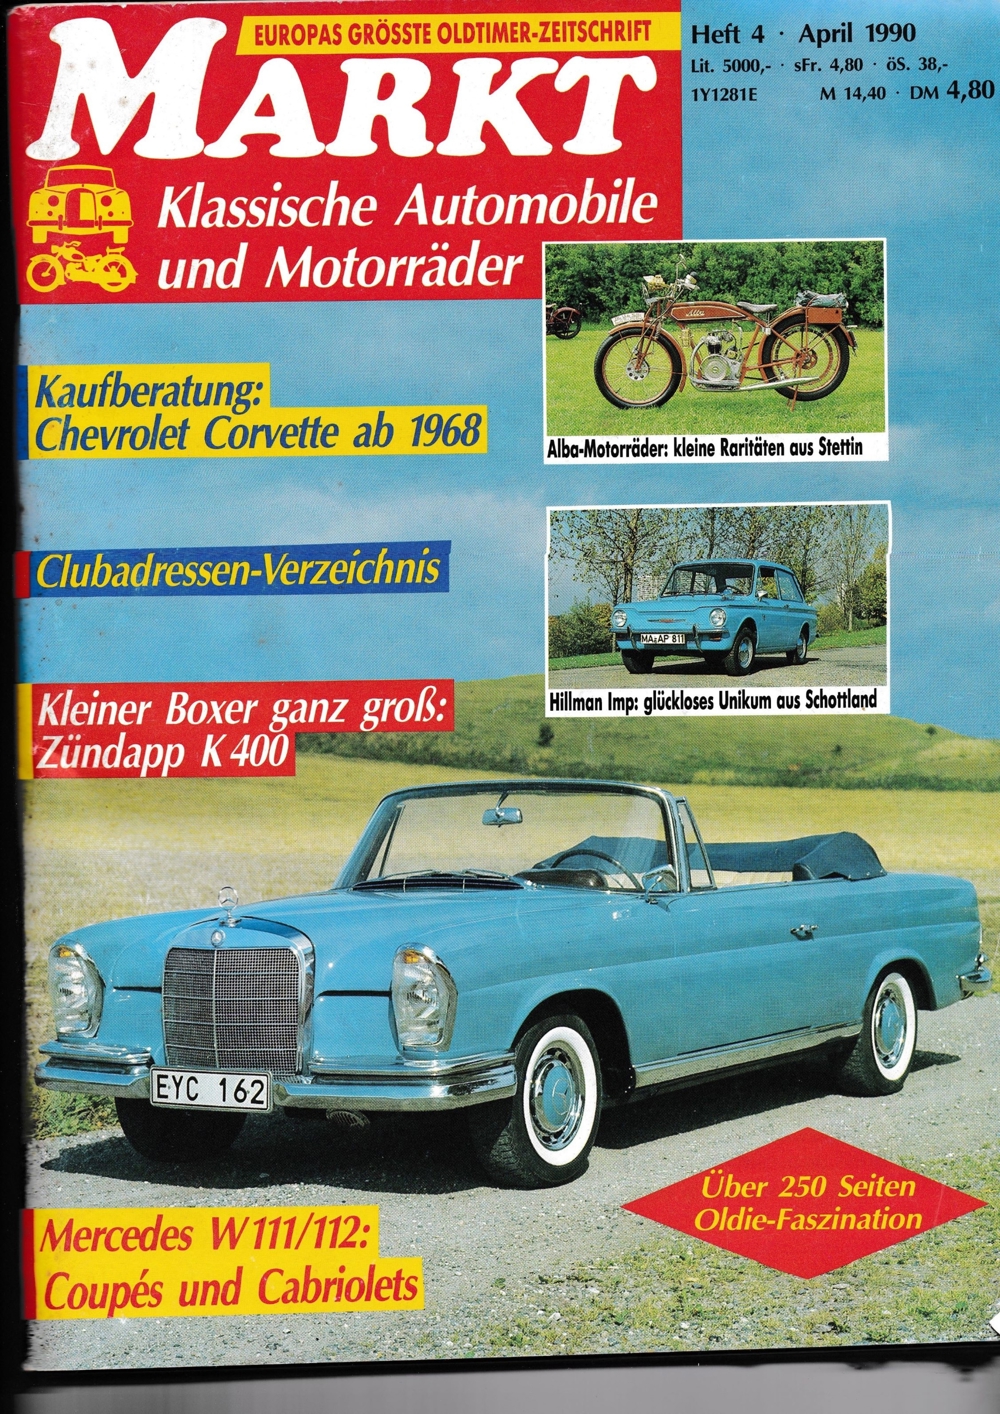 Markt Klassische Automobile und Motorräder - Heft 4 von April 1990